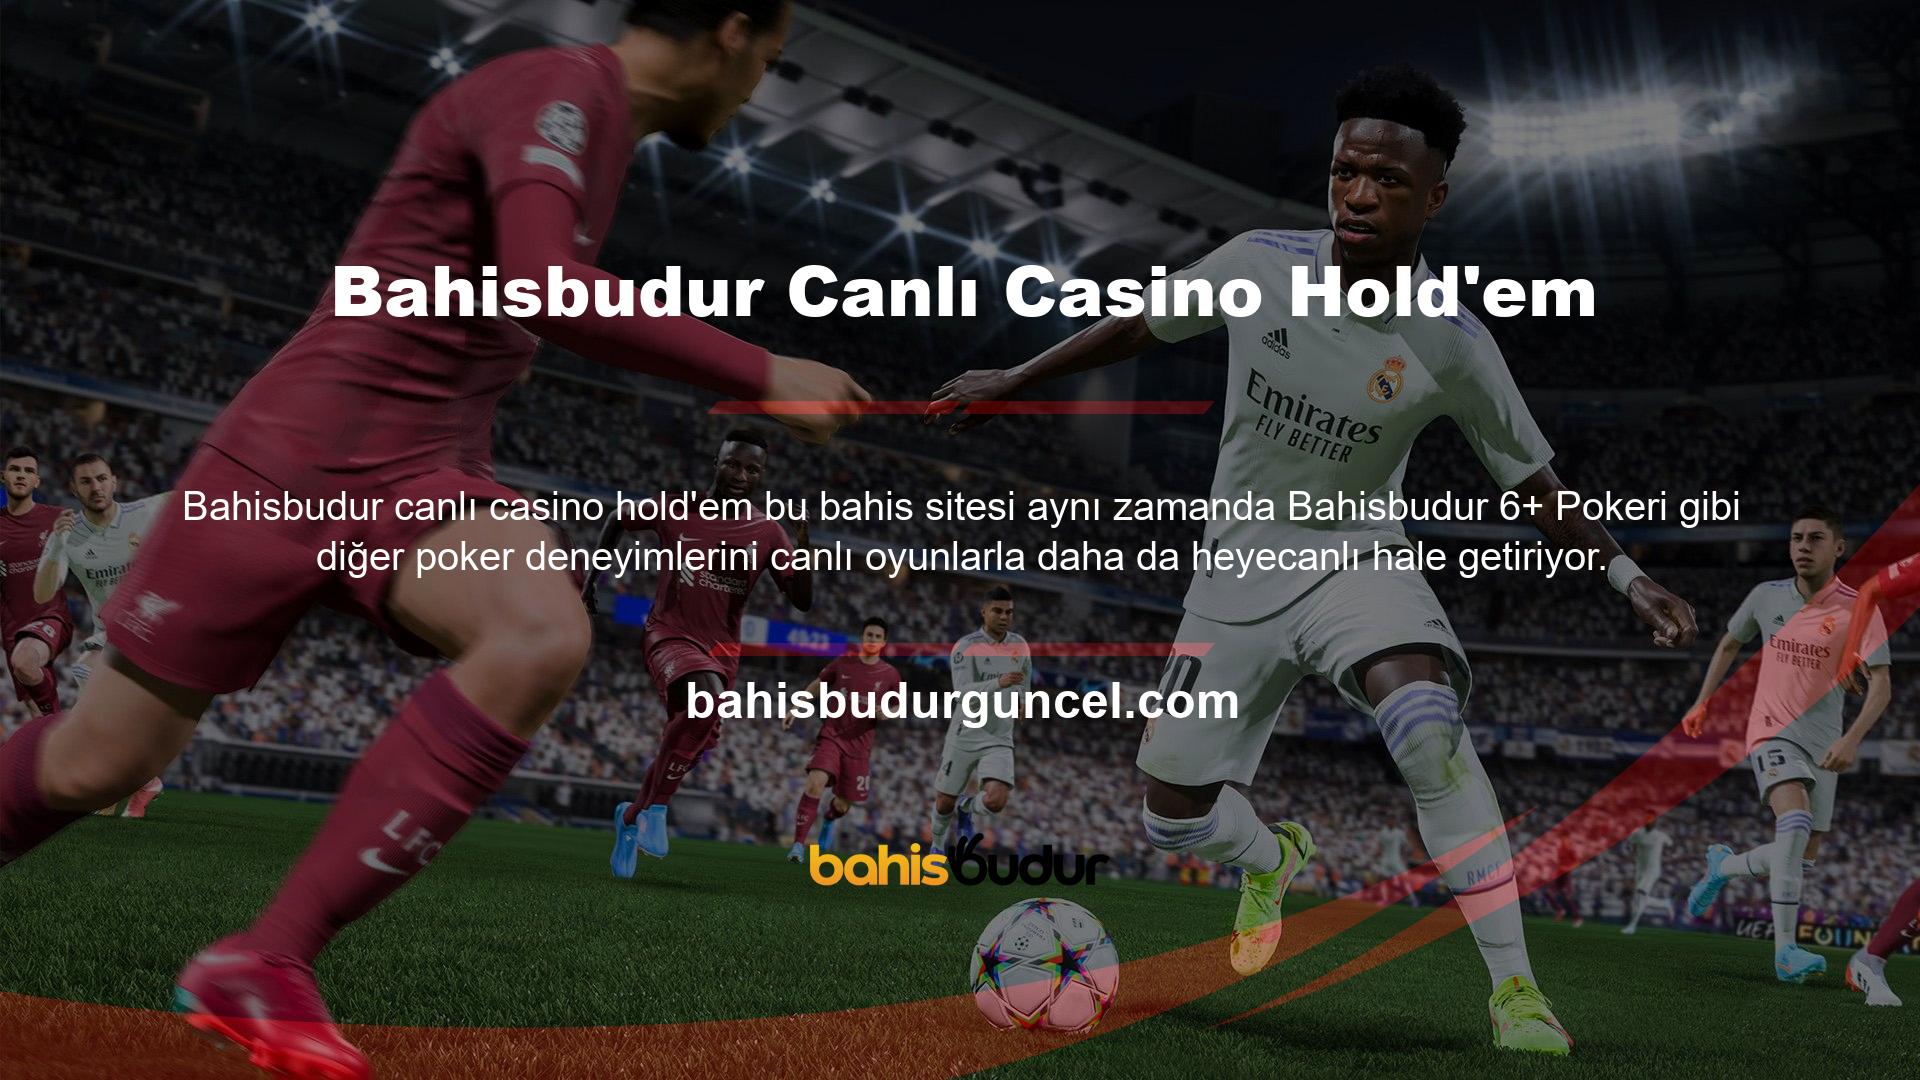 Bahisbudur, profesyonel casino krupiyerleri tarafından oynanan canlı poker sunmaktadır